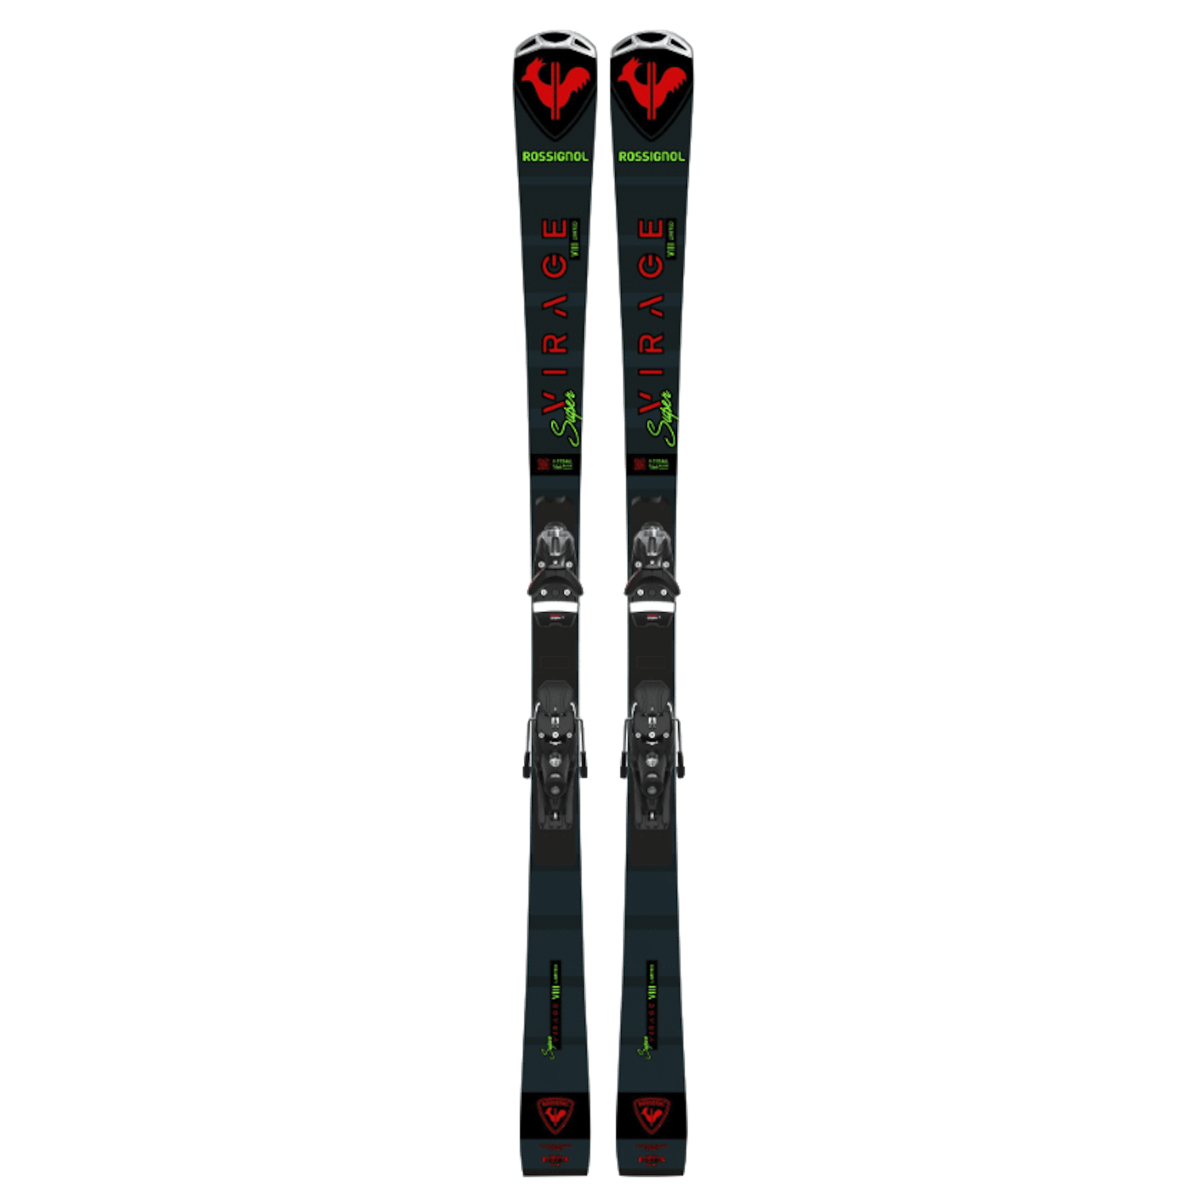 ROSSIGNOL SUPER VIRAGE VIII TECH K SPX14 alpine skis